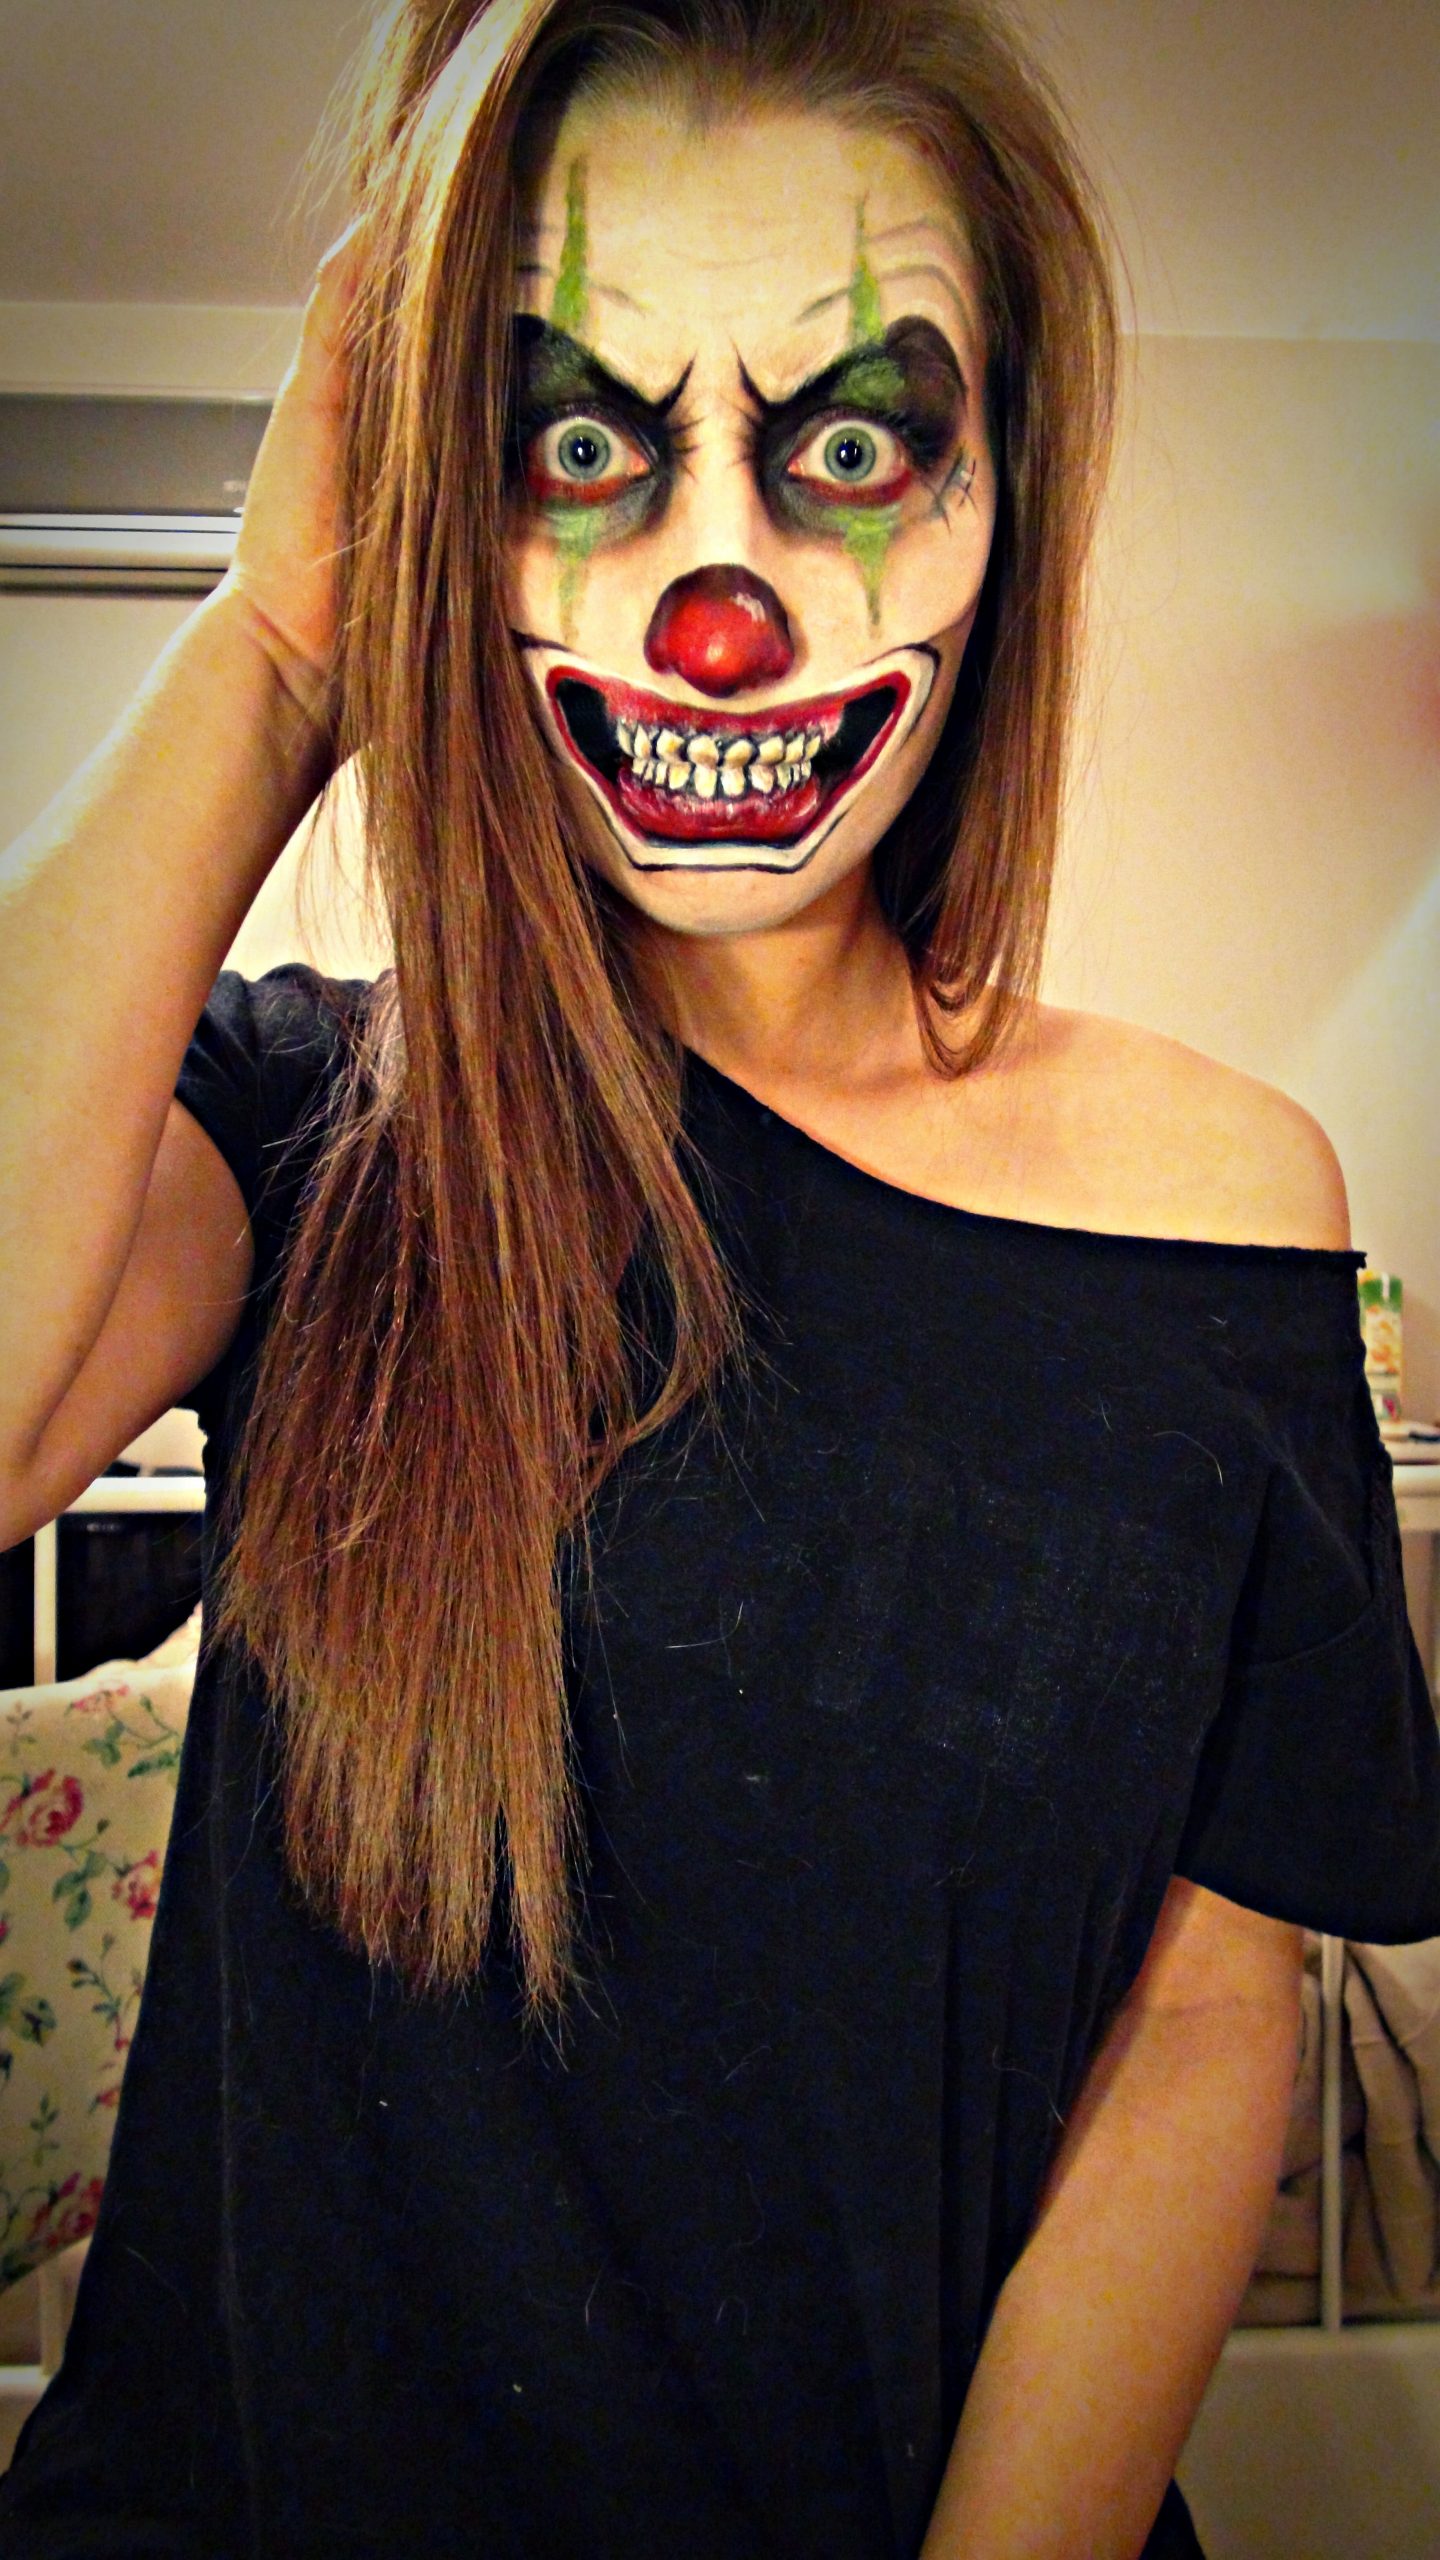 Scary clown makeup                                                              …